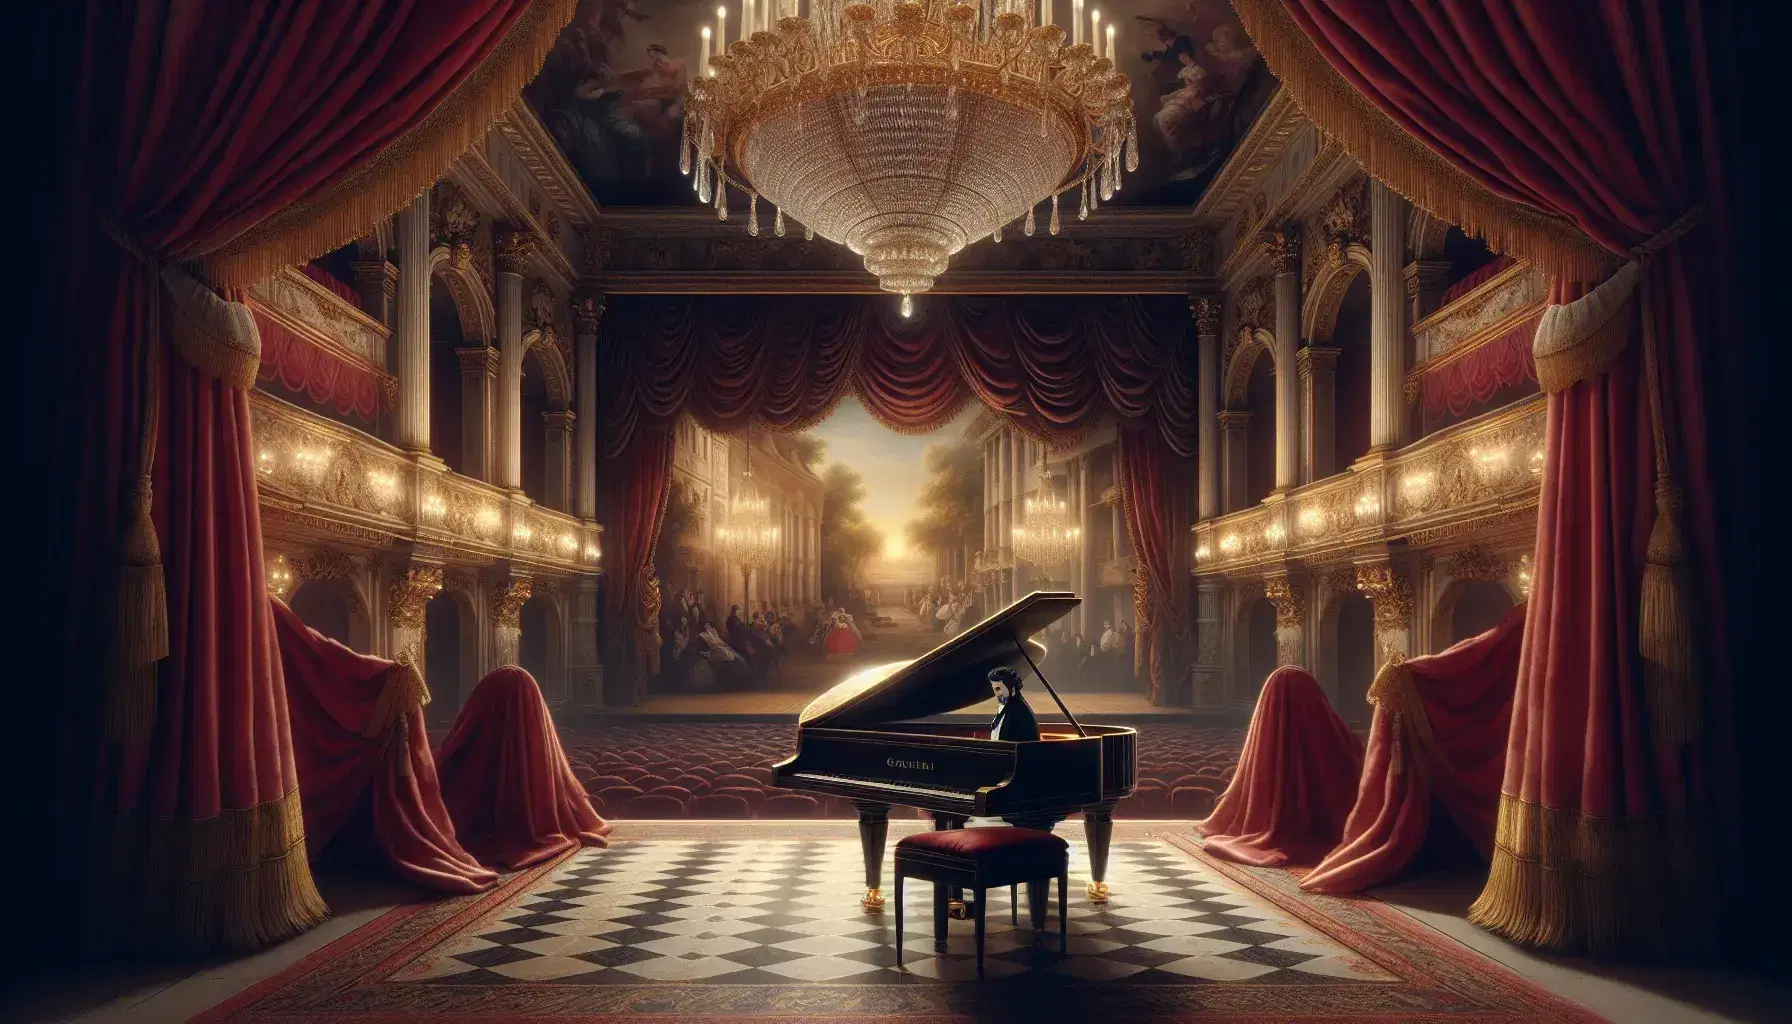 Scena di teatro d'opera in stile romantico con tende rosse, pianoforte a coda e figura maschile in abito d'epoca sotto luci calde.